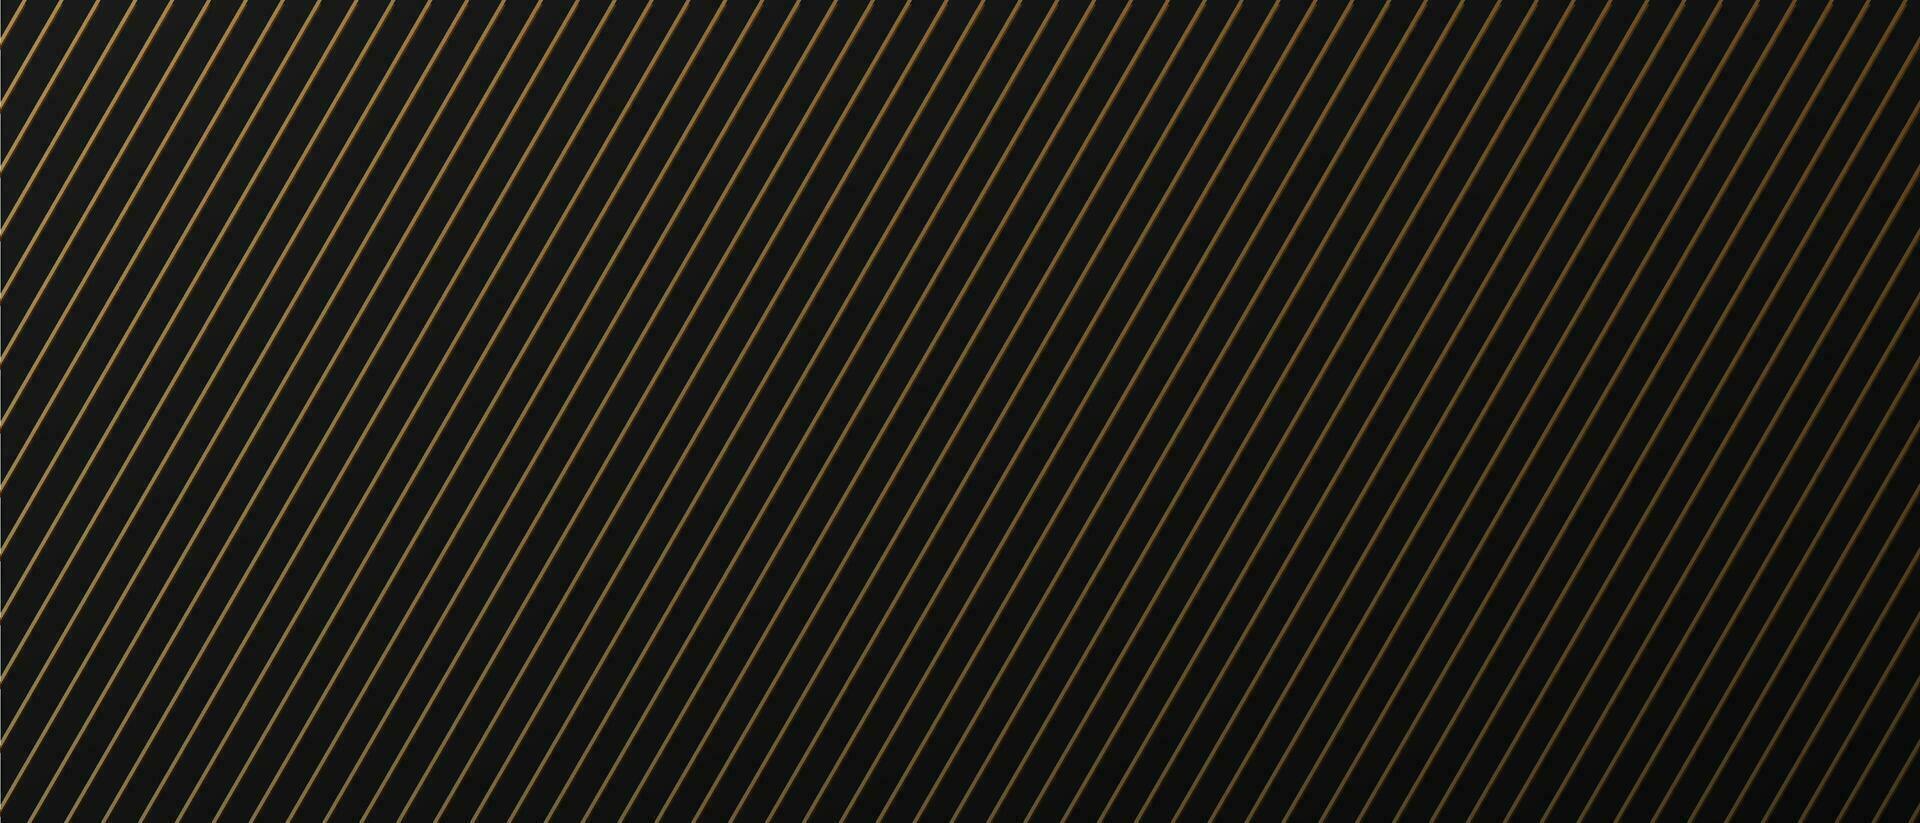 Gold dunkel Hintergrund mit gestreift Linien golden mit Kopieren Raum zum Text. Luxus Stil. vektor